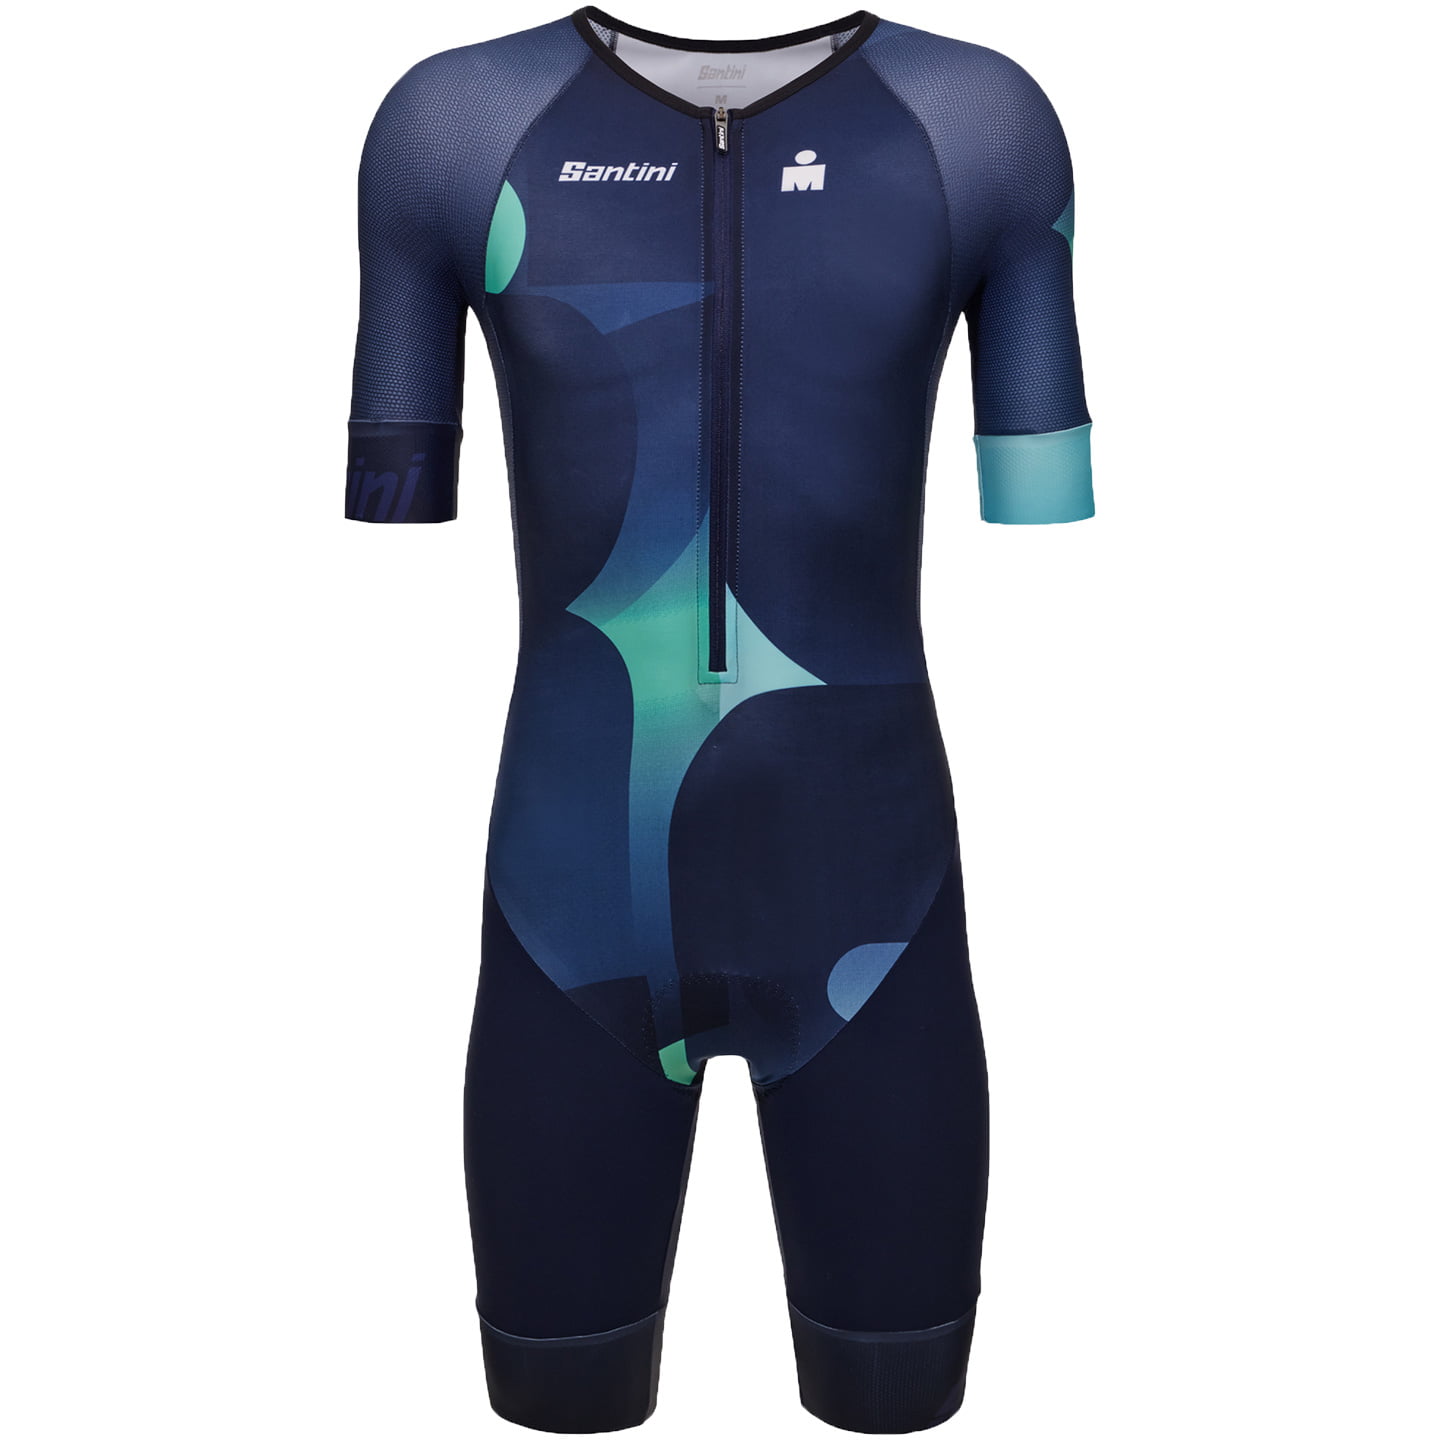 SANTINI X Ironman Koa Tri Suit Tri Suit, for men, size XL, Triathlon suit, Triathlon gear